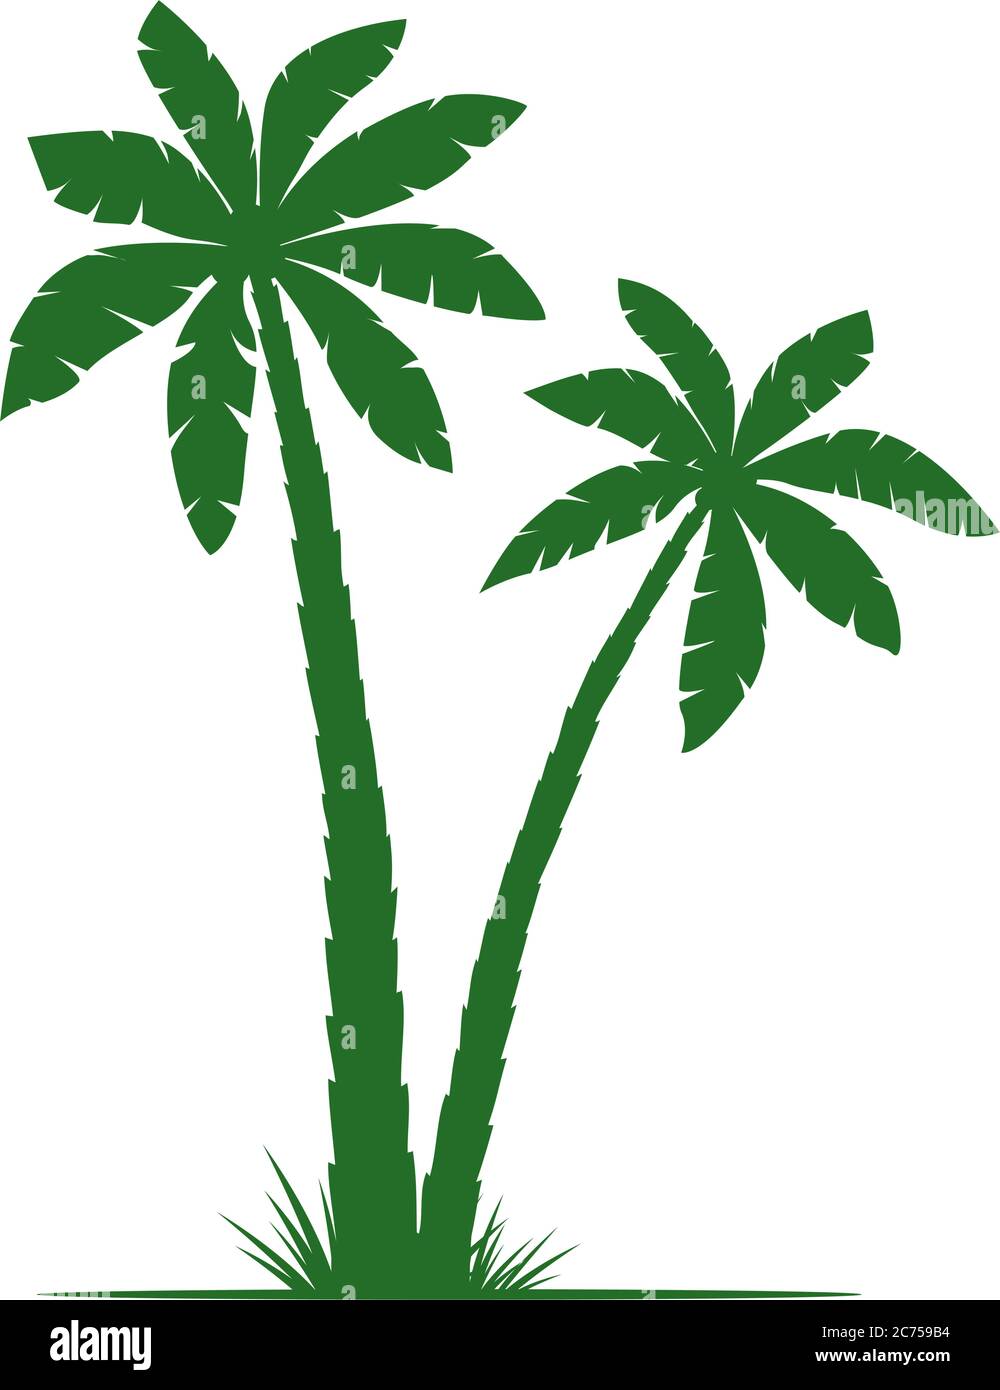 Grüne Palmen, Silhouette Vektor-Illustration, isoliert auf weißem Hintergrund. Vektorgrafik. Einfach Piktogramm. Florales Element. Stock Vektor